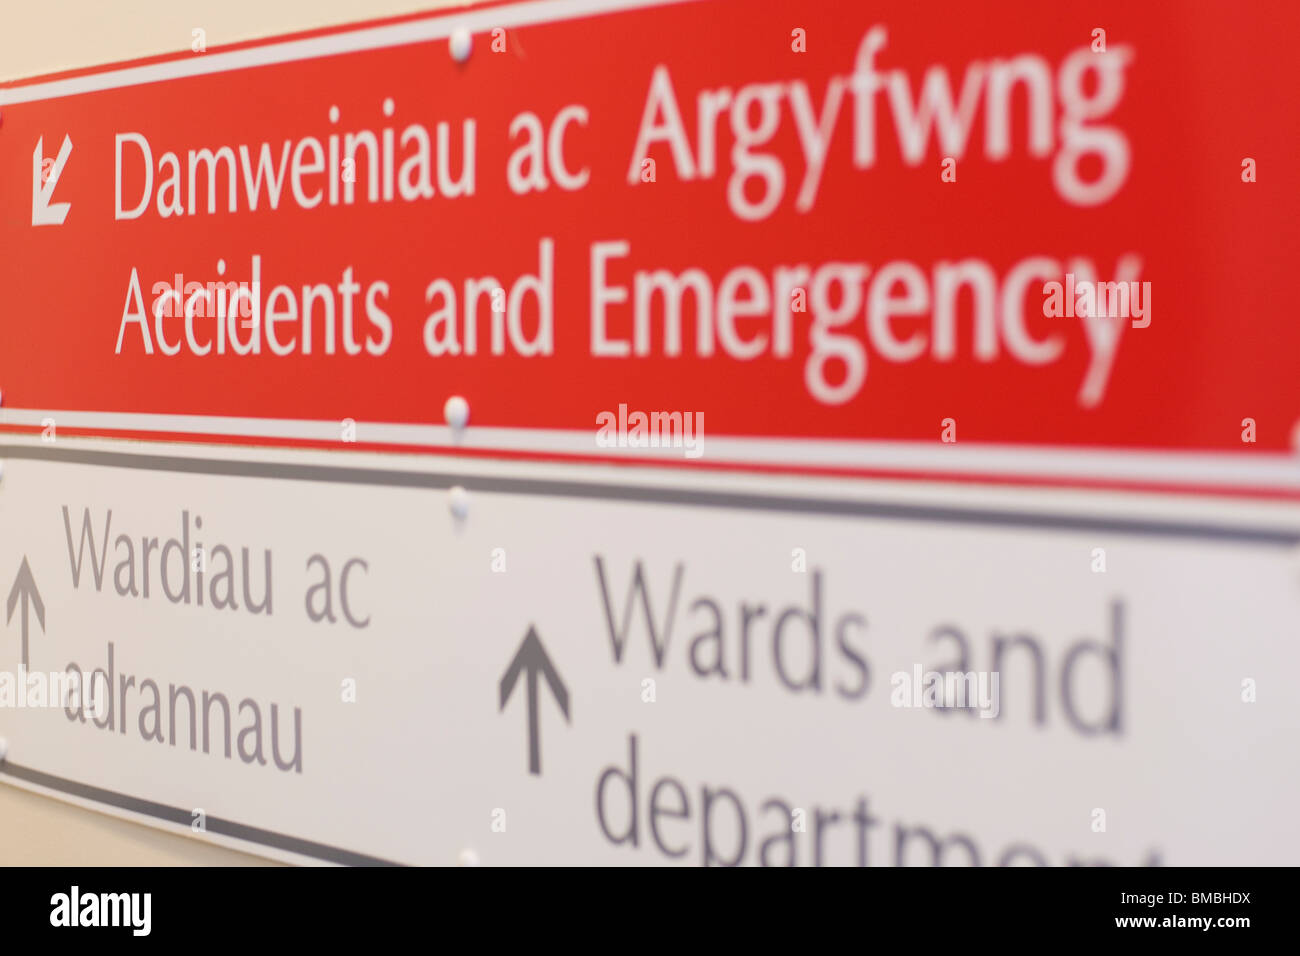 Un signe pour les accidents et d'urgence de l'hôpital Bronglais à Aberystwyth, tourné avec une faible profondeur de champ. Banque D'Images